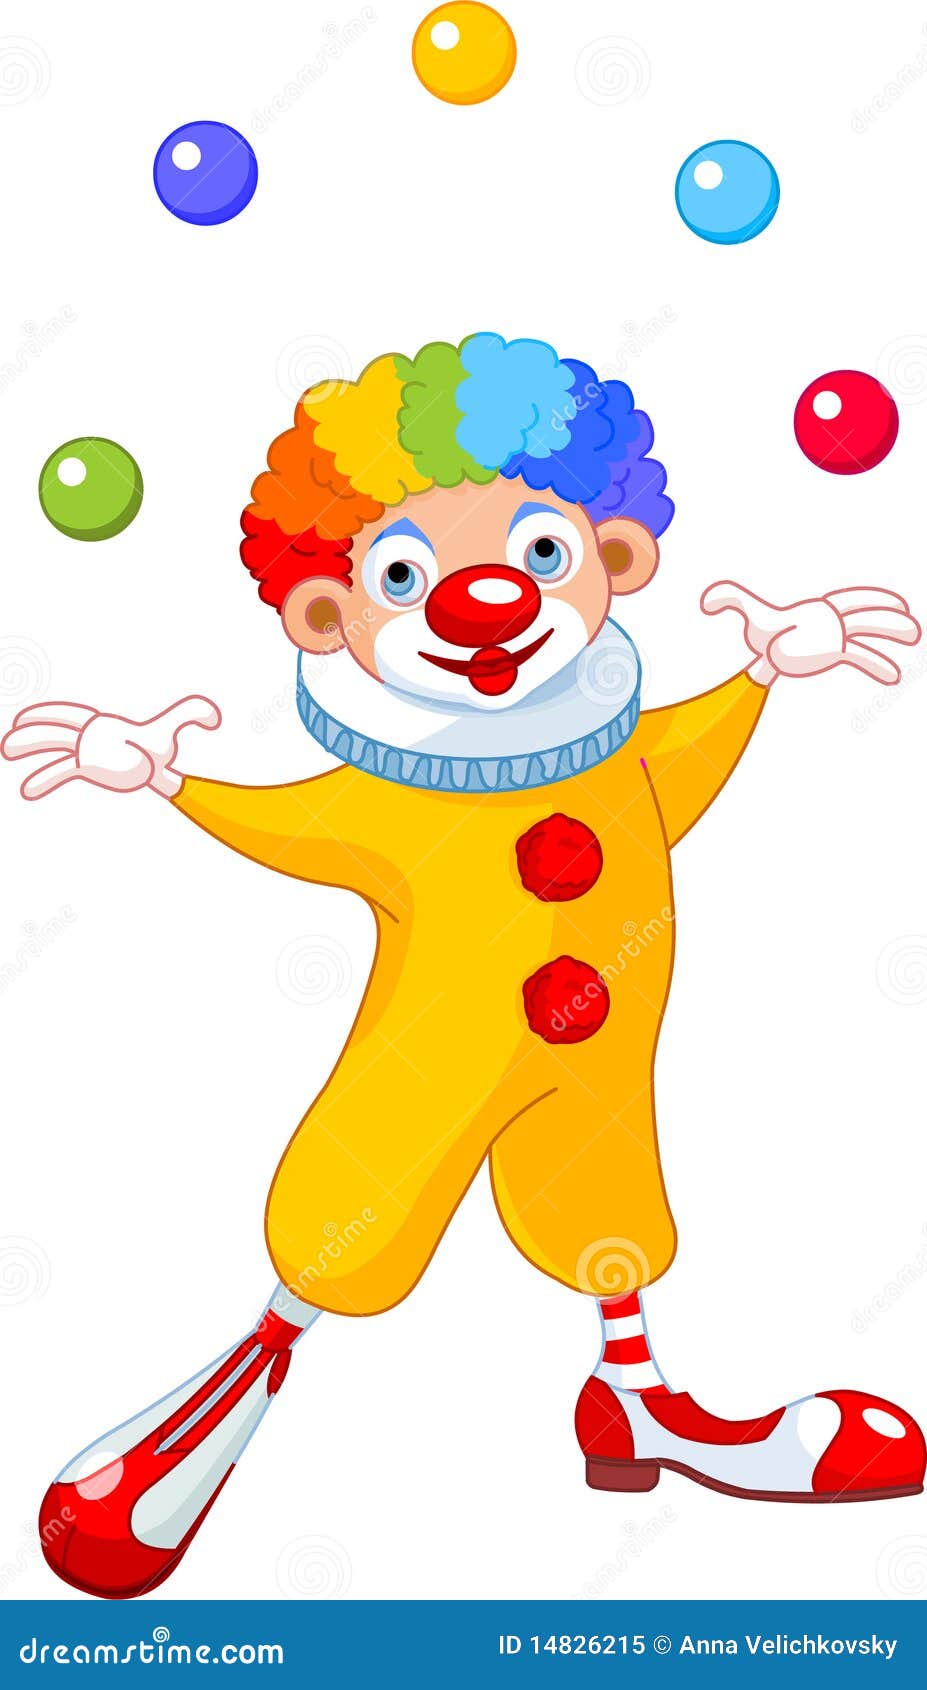 Jonglierender Clown vektor abbildung. Illustration von partei - 14826215